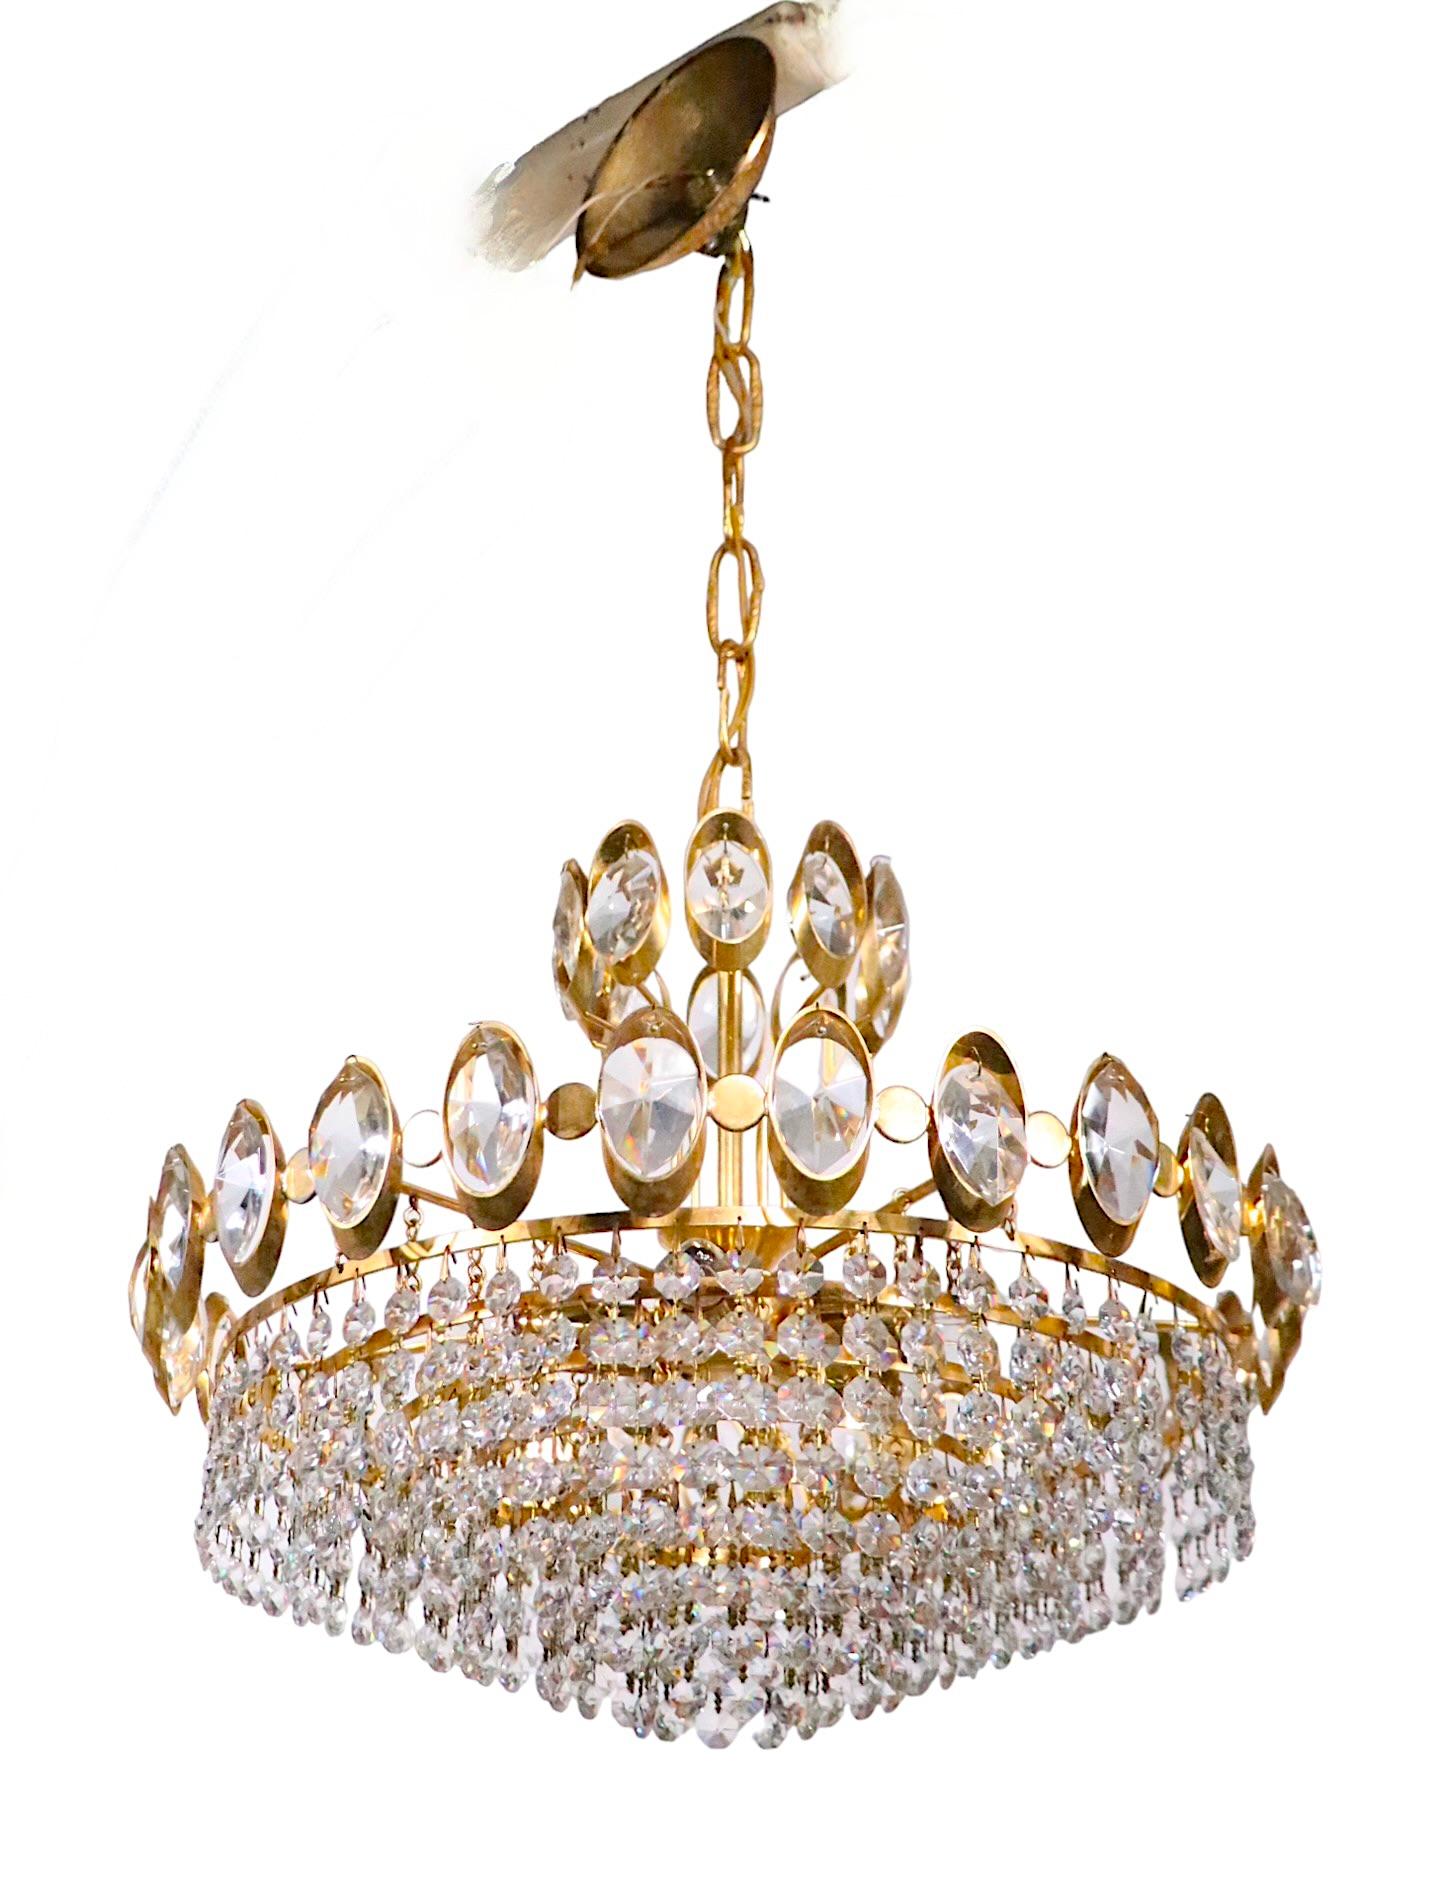 Exceptionnel lustre de style Hollywood Regency composé d'une armature en métal doré, avec des joyaux en verre à facettes, d'où pendent des anneaux concentriques gradués avec des brins de verre prismatique. Lorsqu'il est allumé, ce luminaire